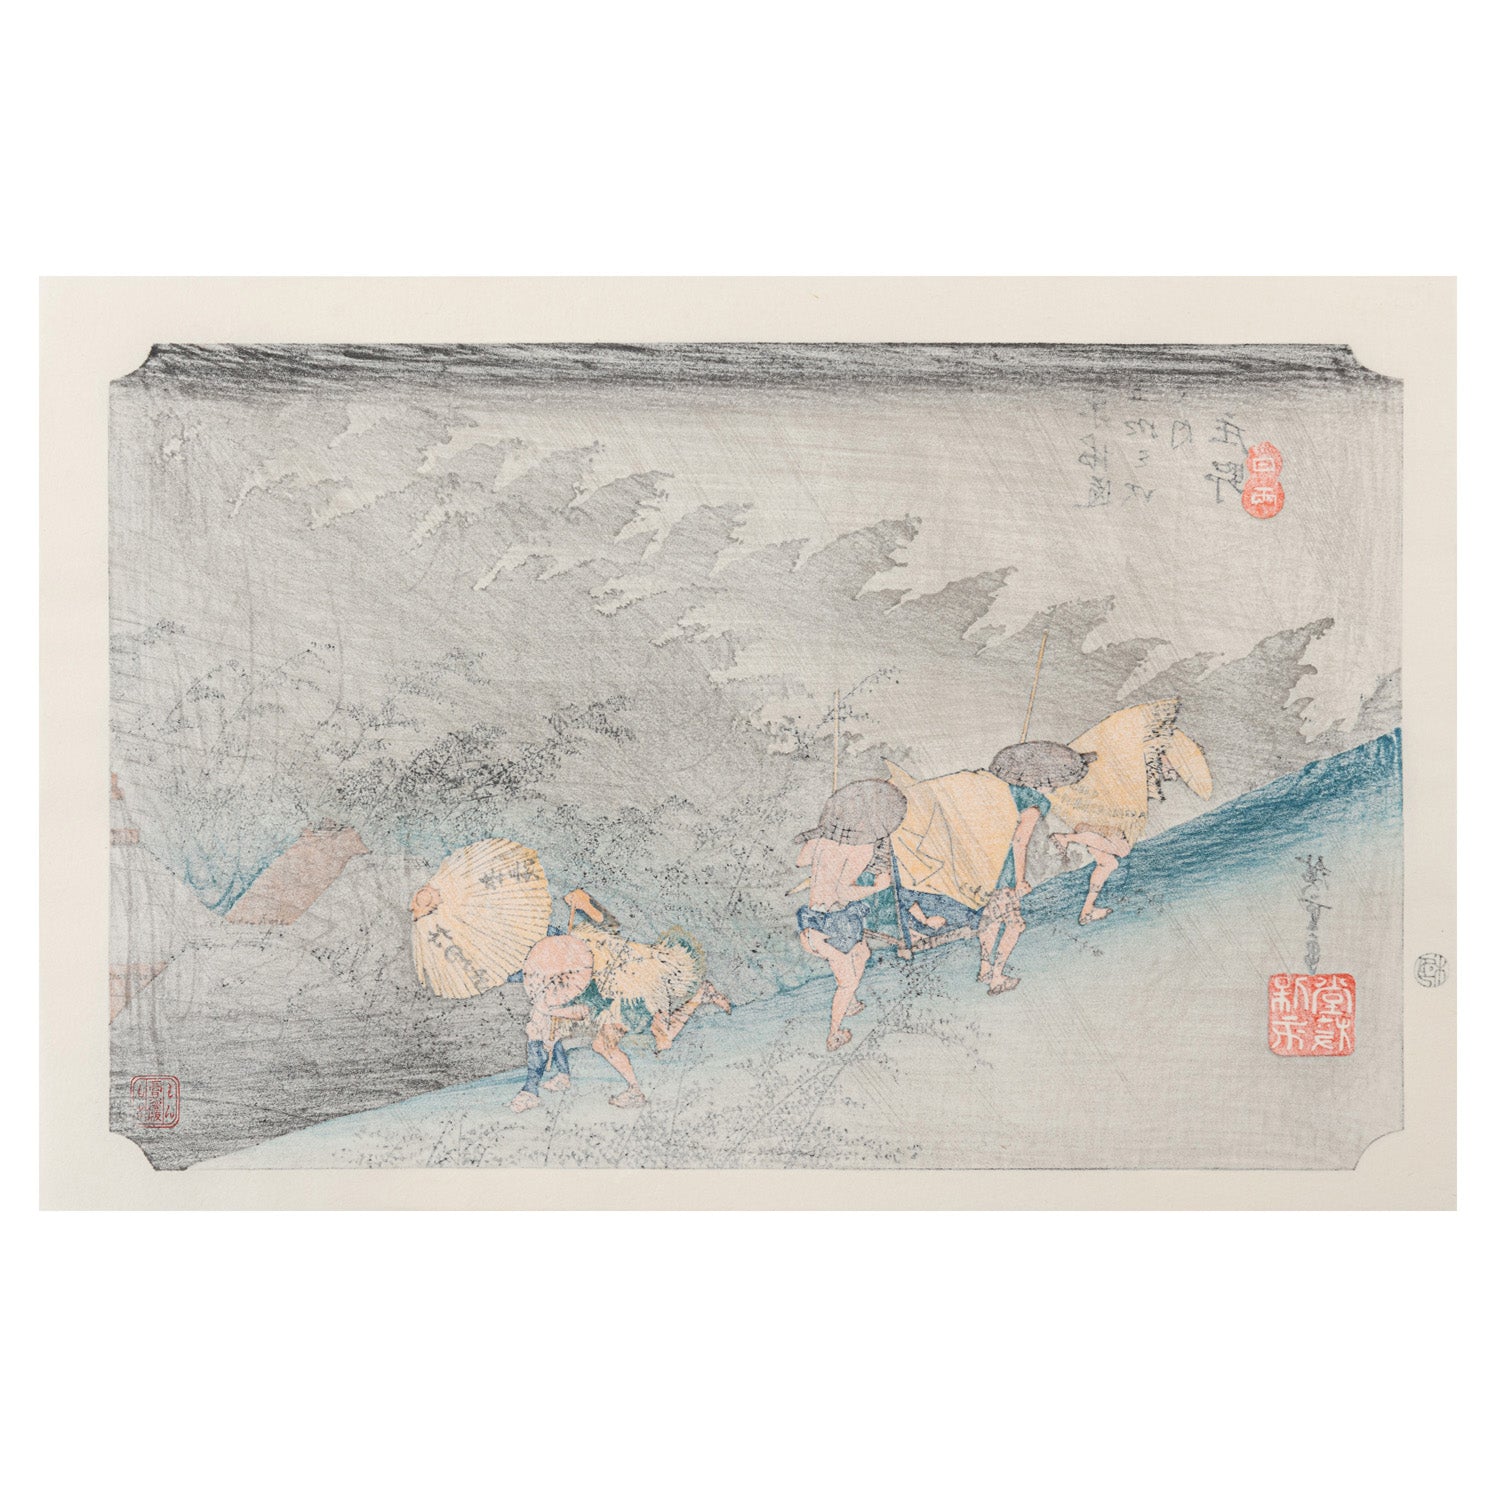 Rain Shower at Shono Japanese Woodblock Print